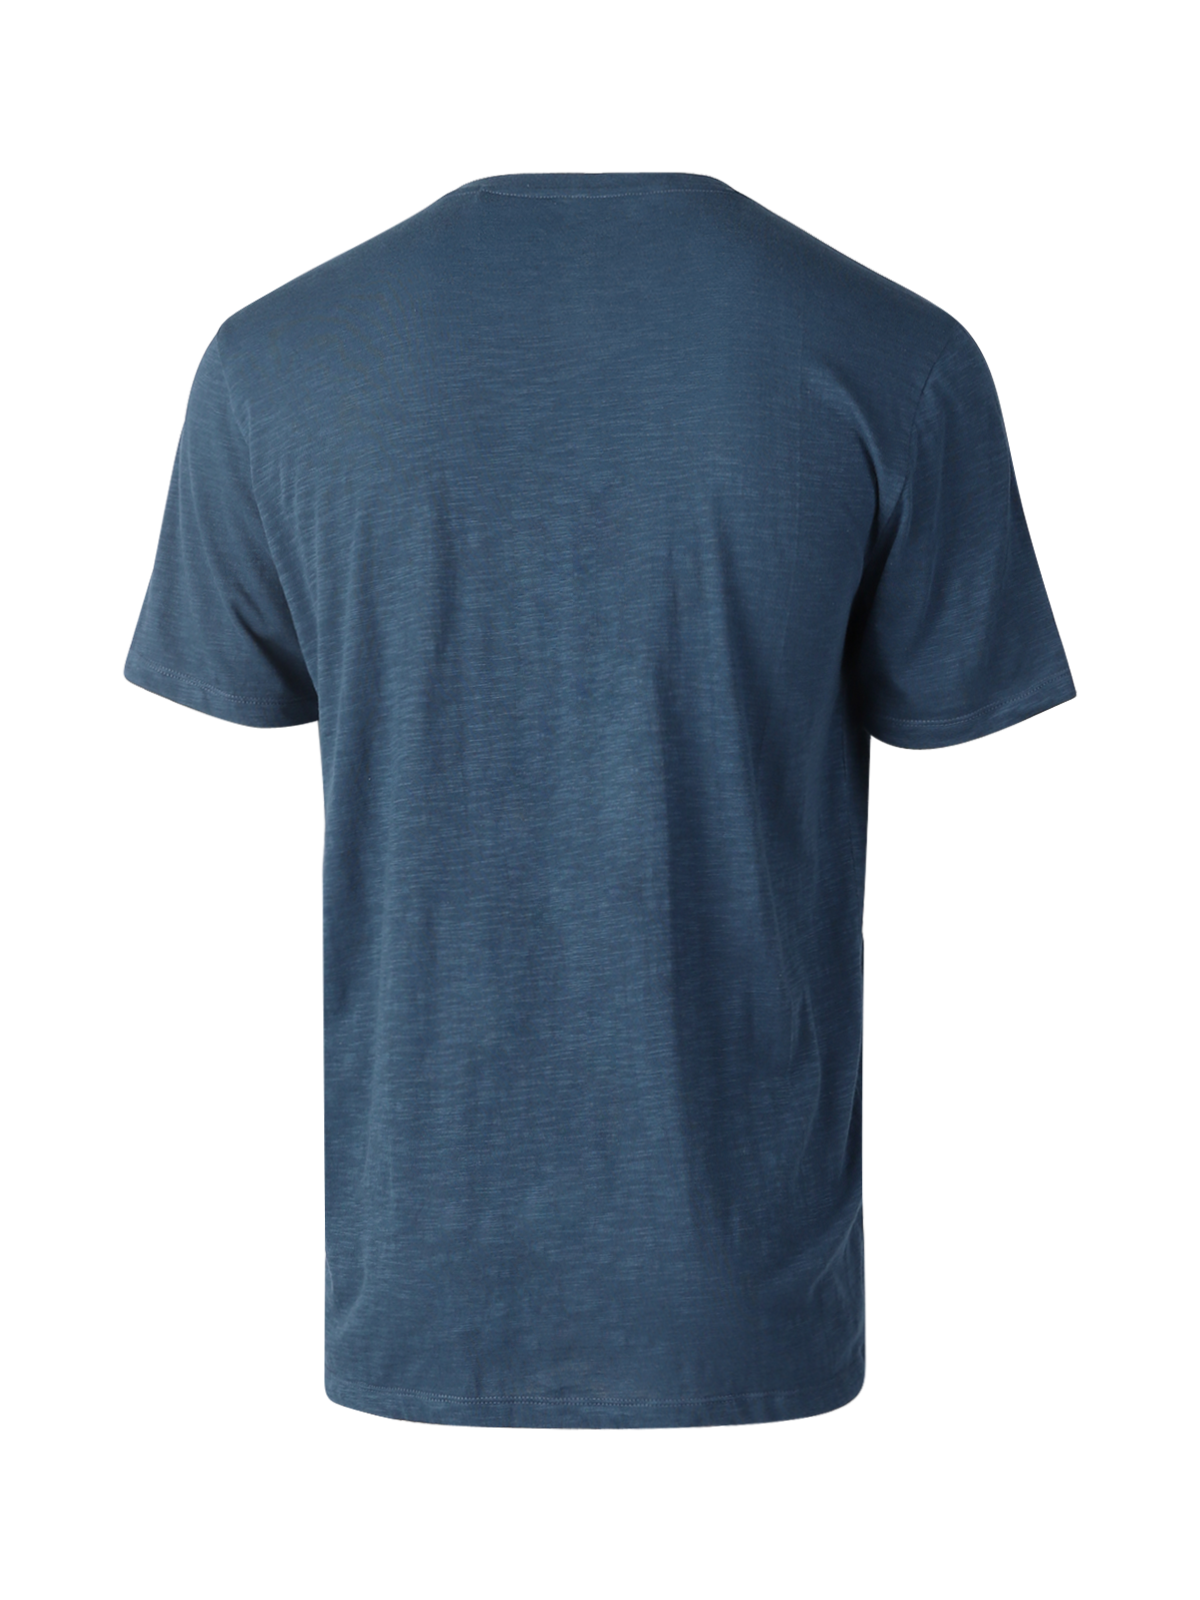 Axle-Slub Herren T-shirt | Blau